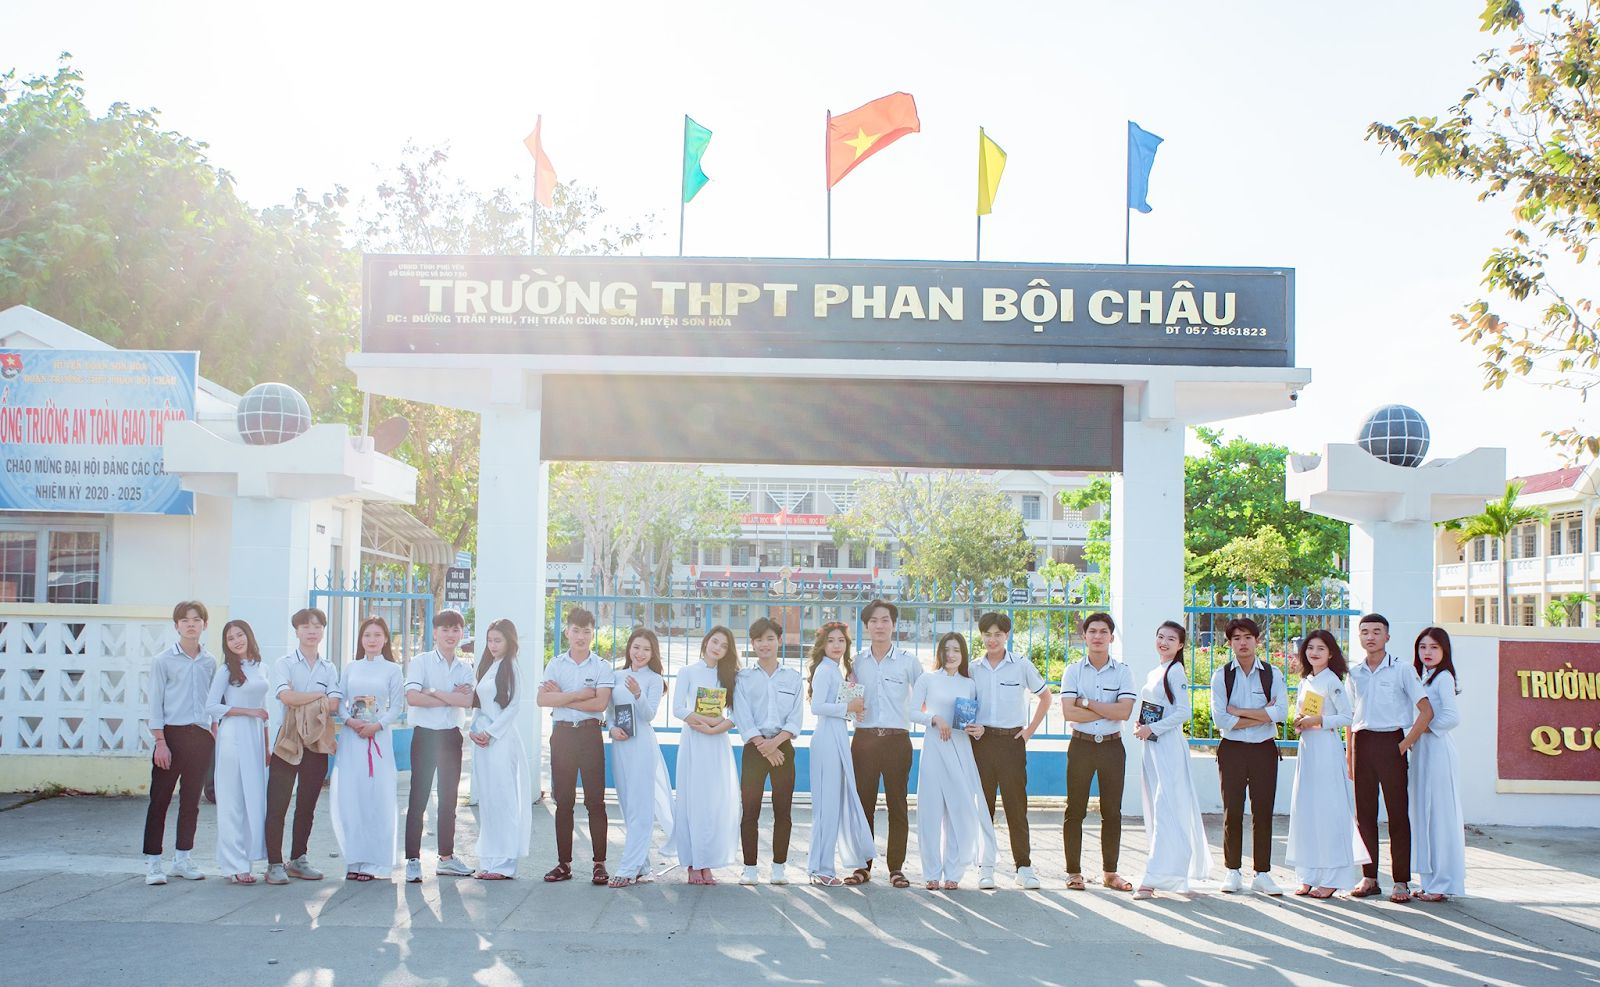 Đánh Giá Trường THPT Phan Bội Châu- Phú Yên Có Tốt Không?